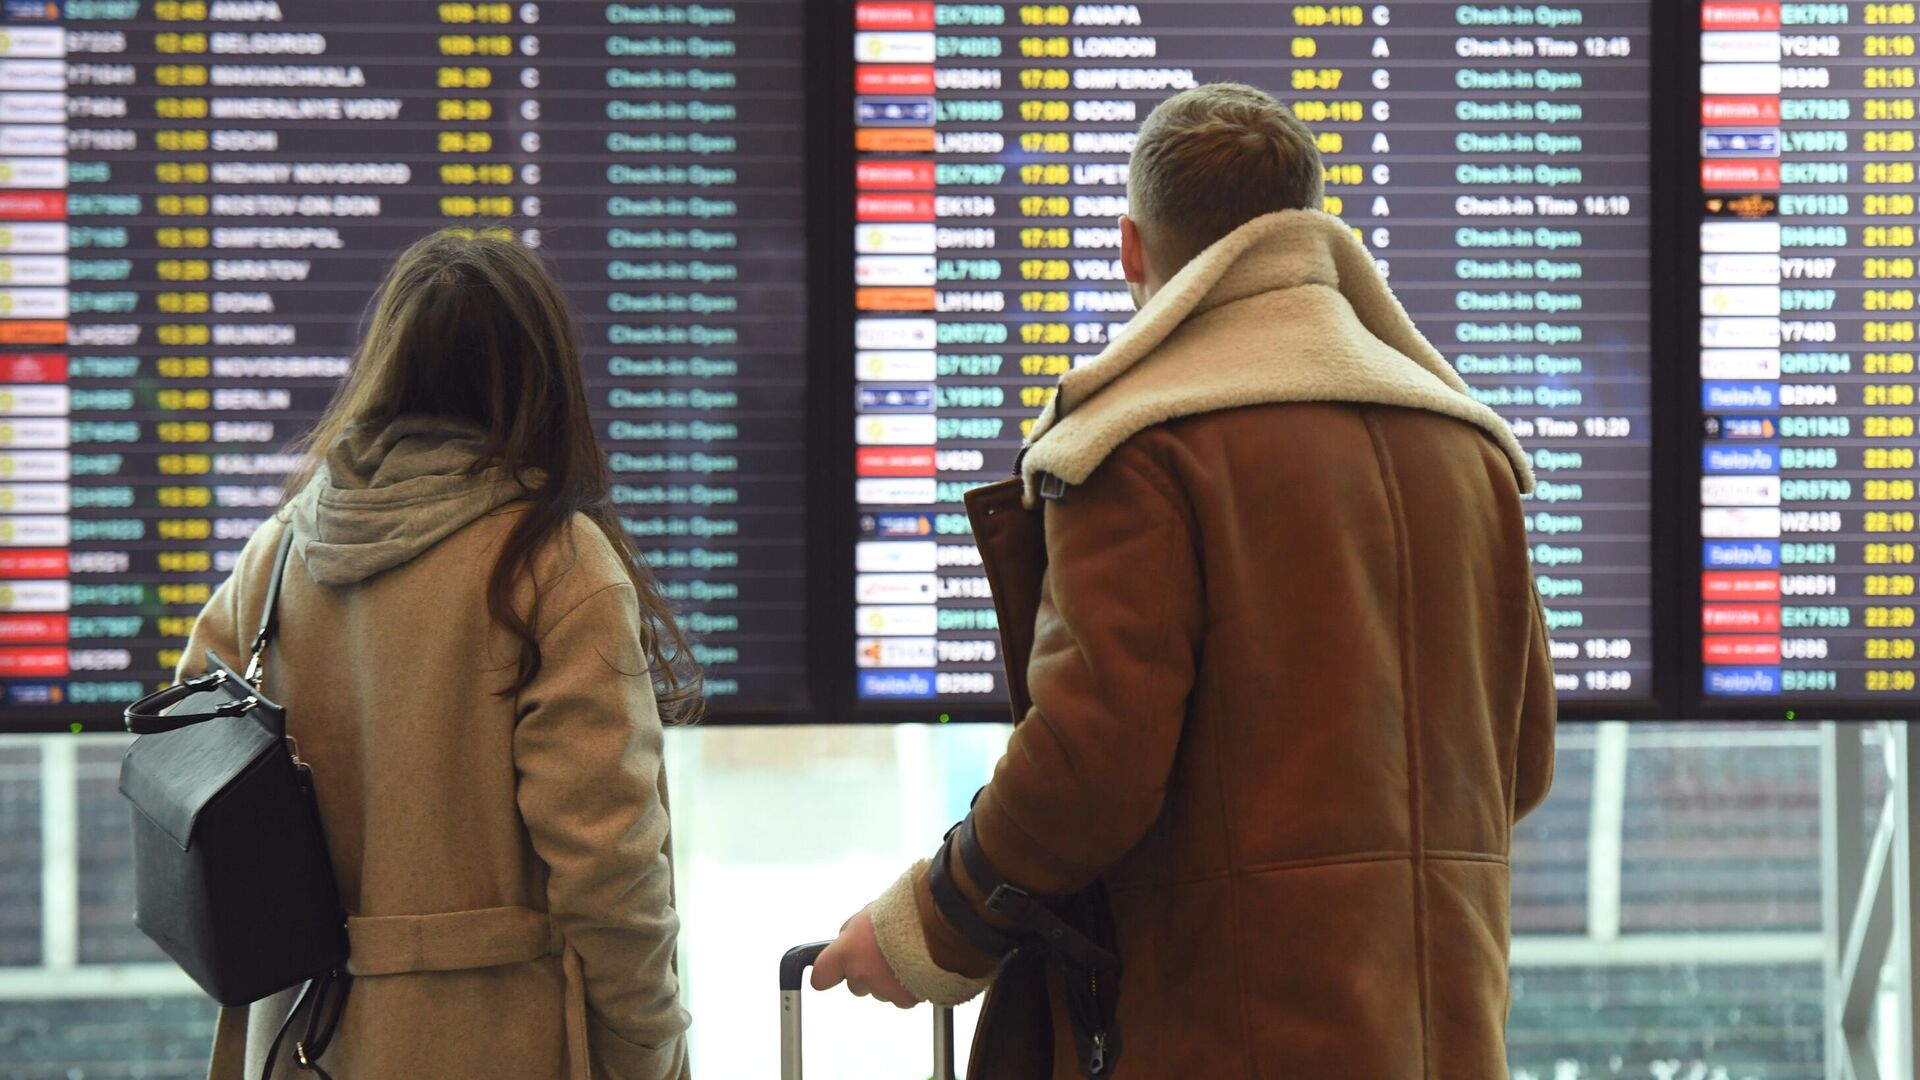 Пассажиры смотрят информационное табло в аэропорту  - РИА Новости, 1920, 21.01.2021